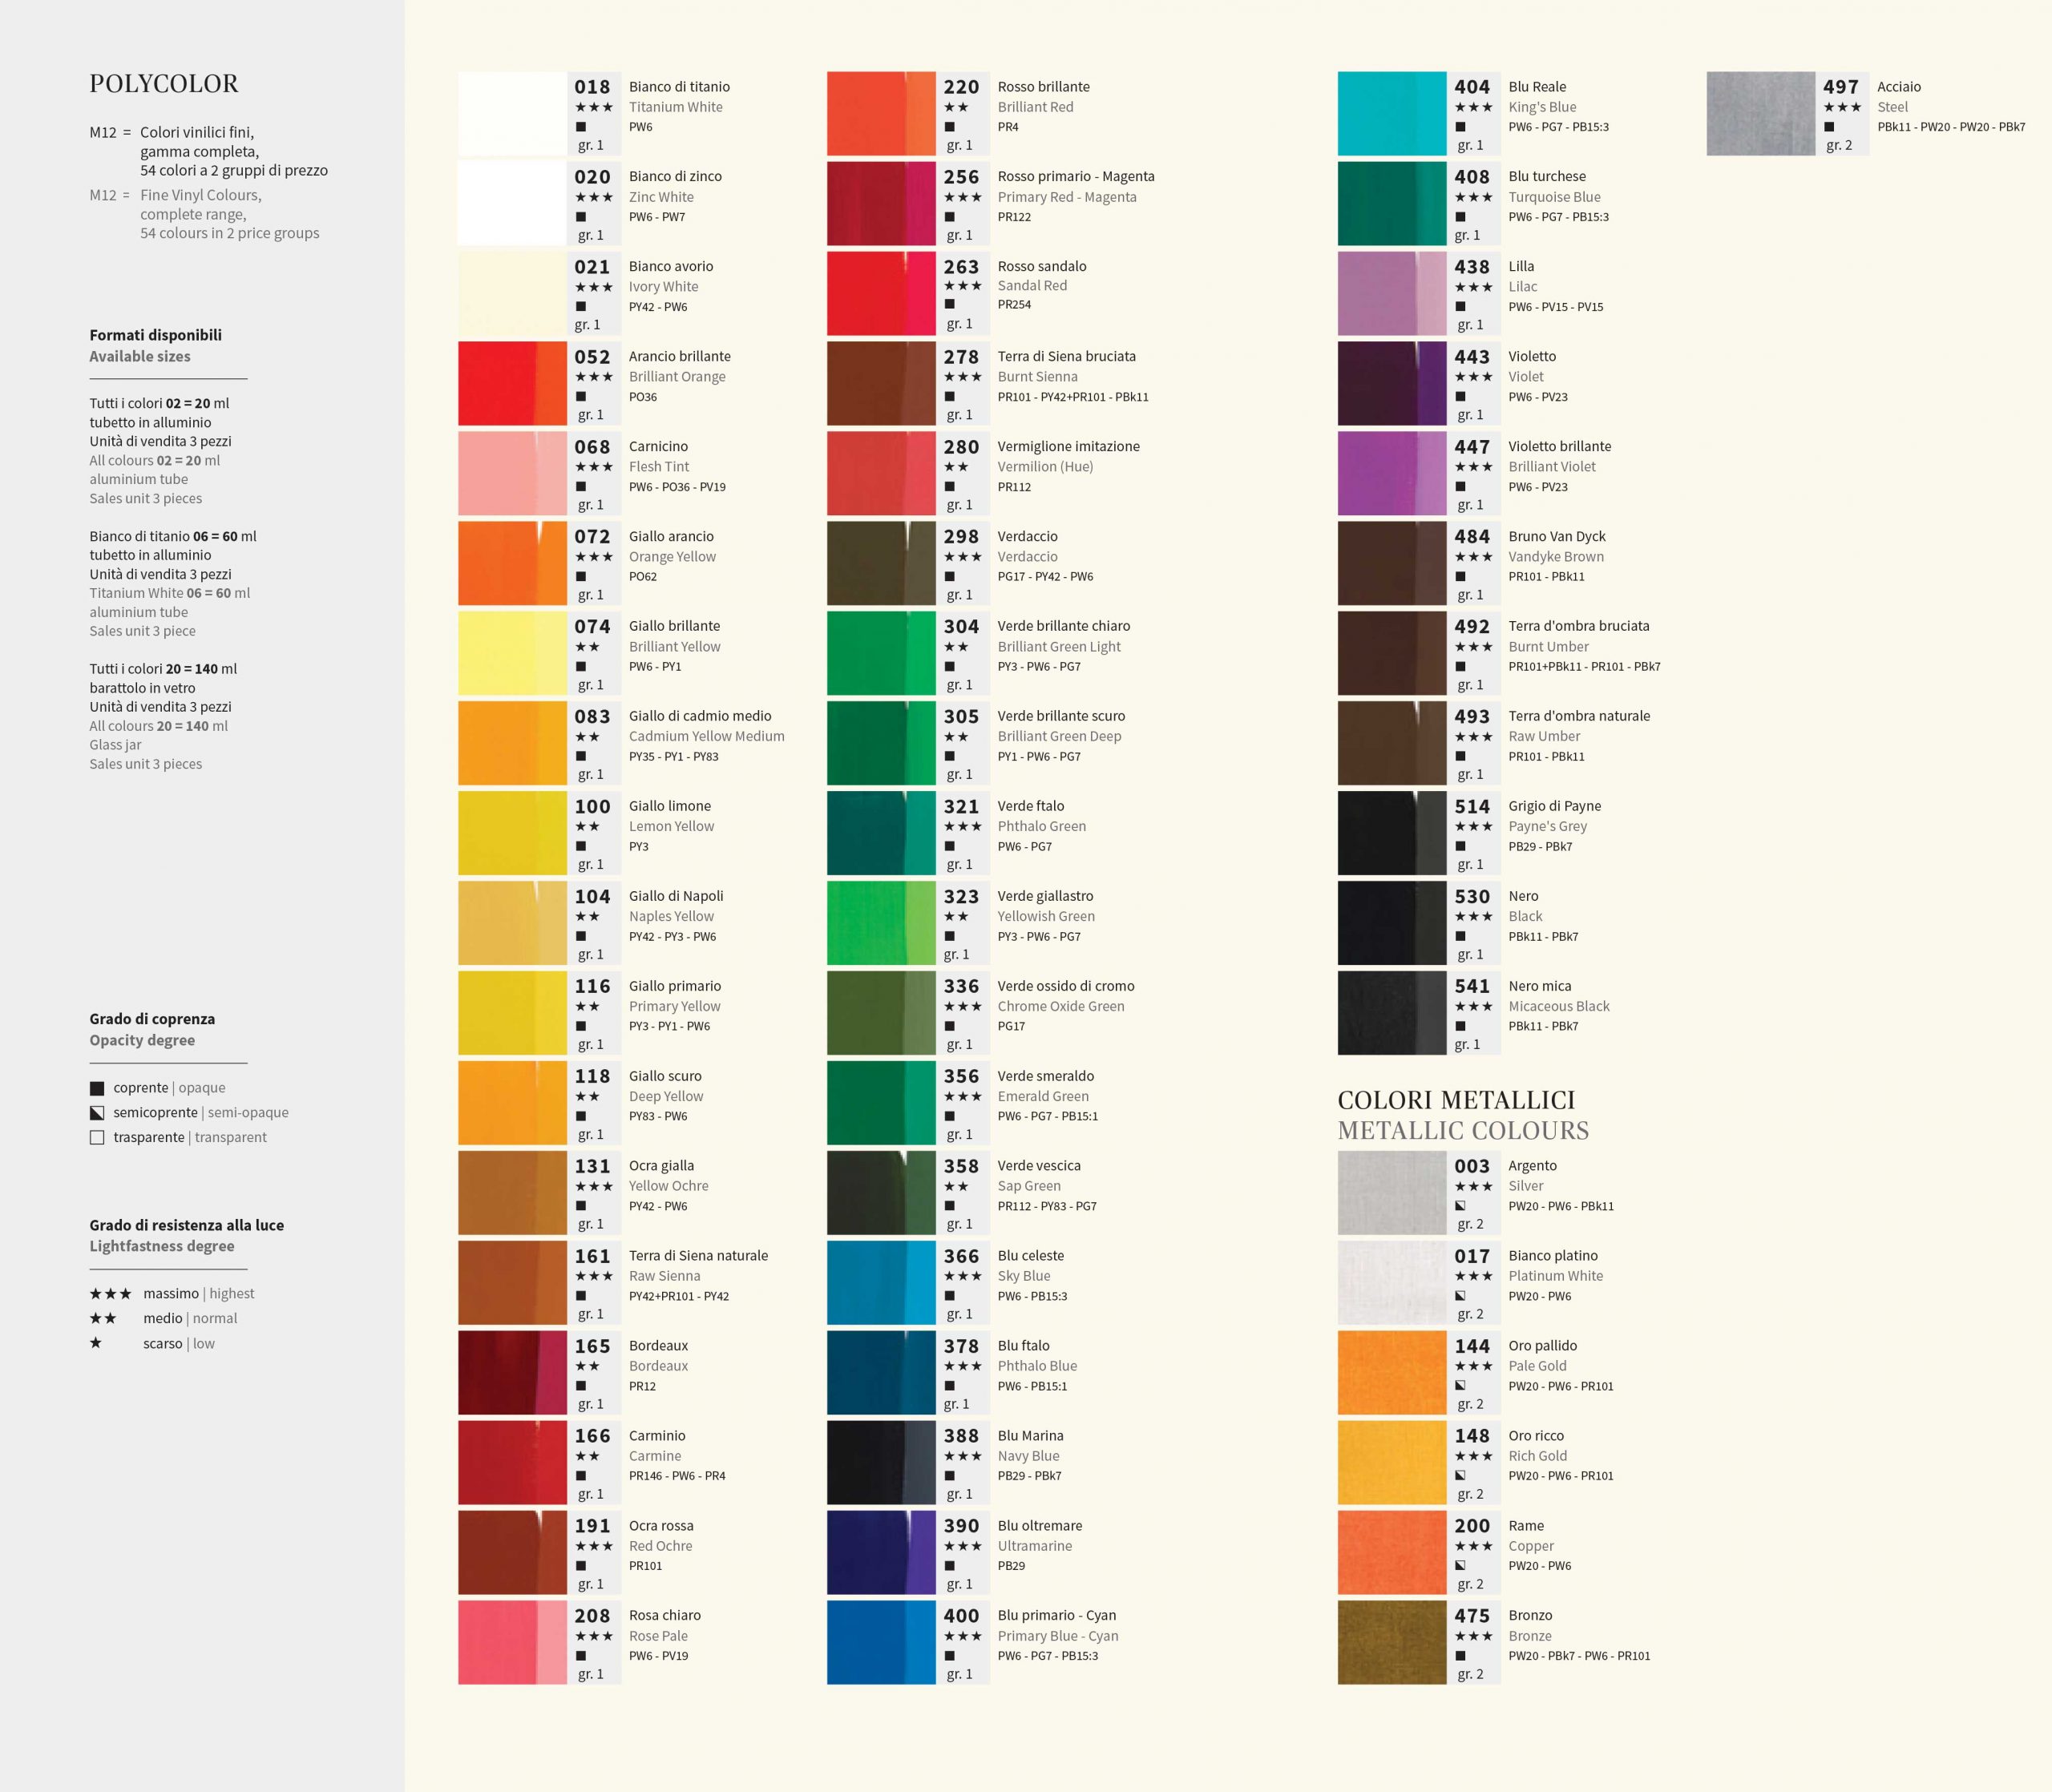 Colori acrilici Polycolor Maimeri - Colorificio Zucchi - Vicenza